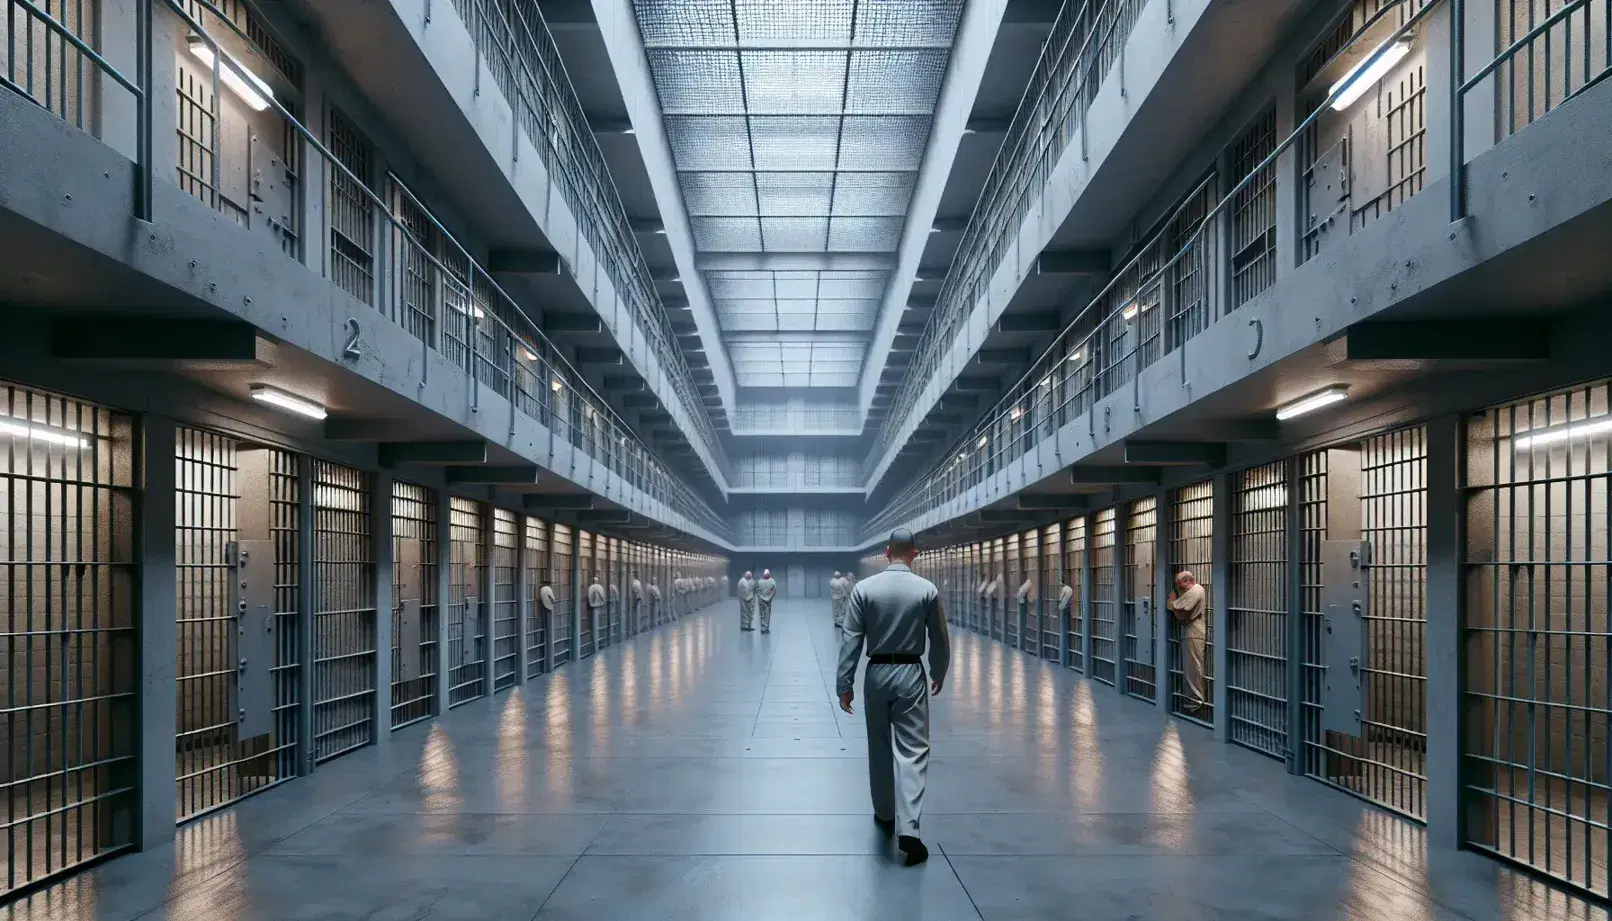 Interior de una prisión con pasillo central, celdas con barrotes y figura de vigilante caminando, iluminación fluorescente y puerta metálica al fondo.